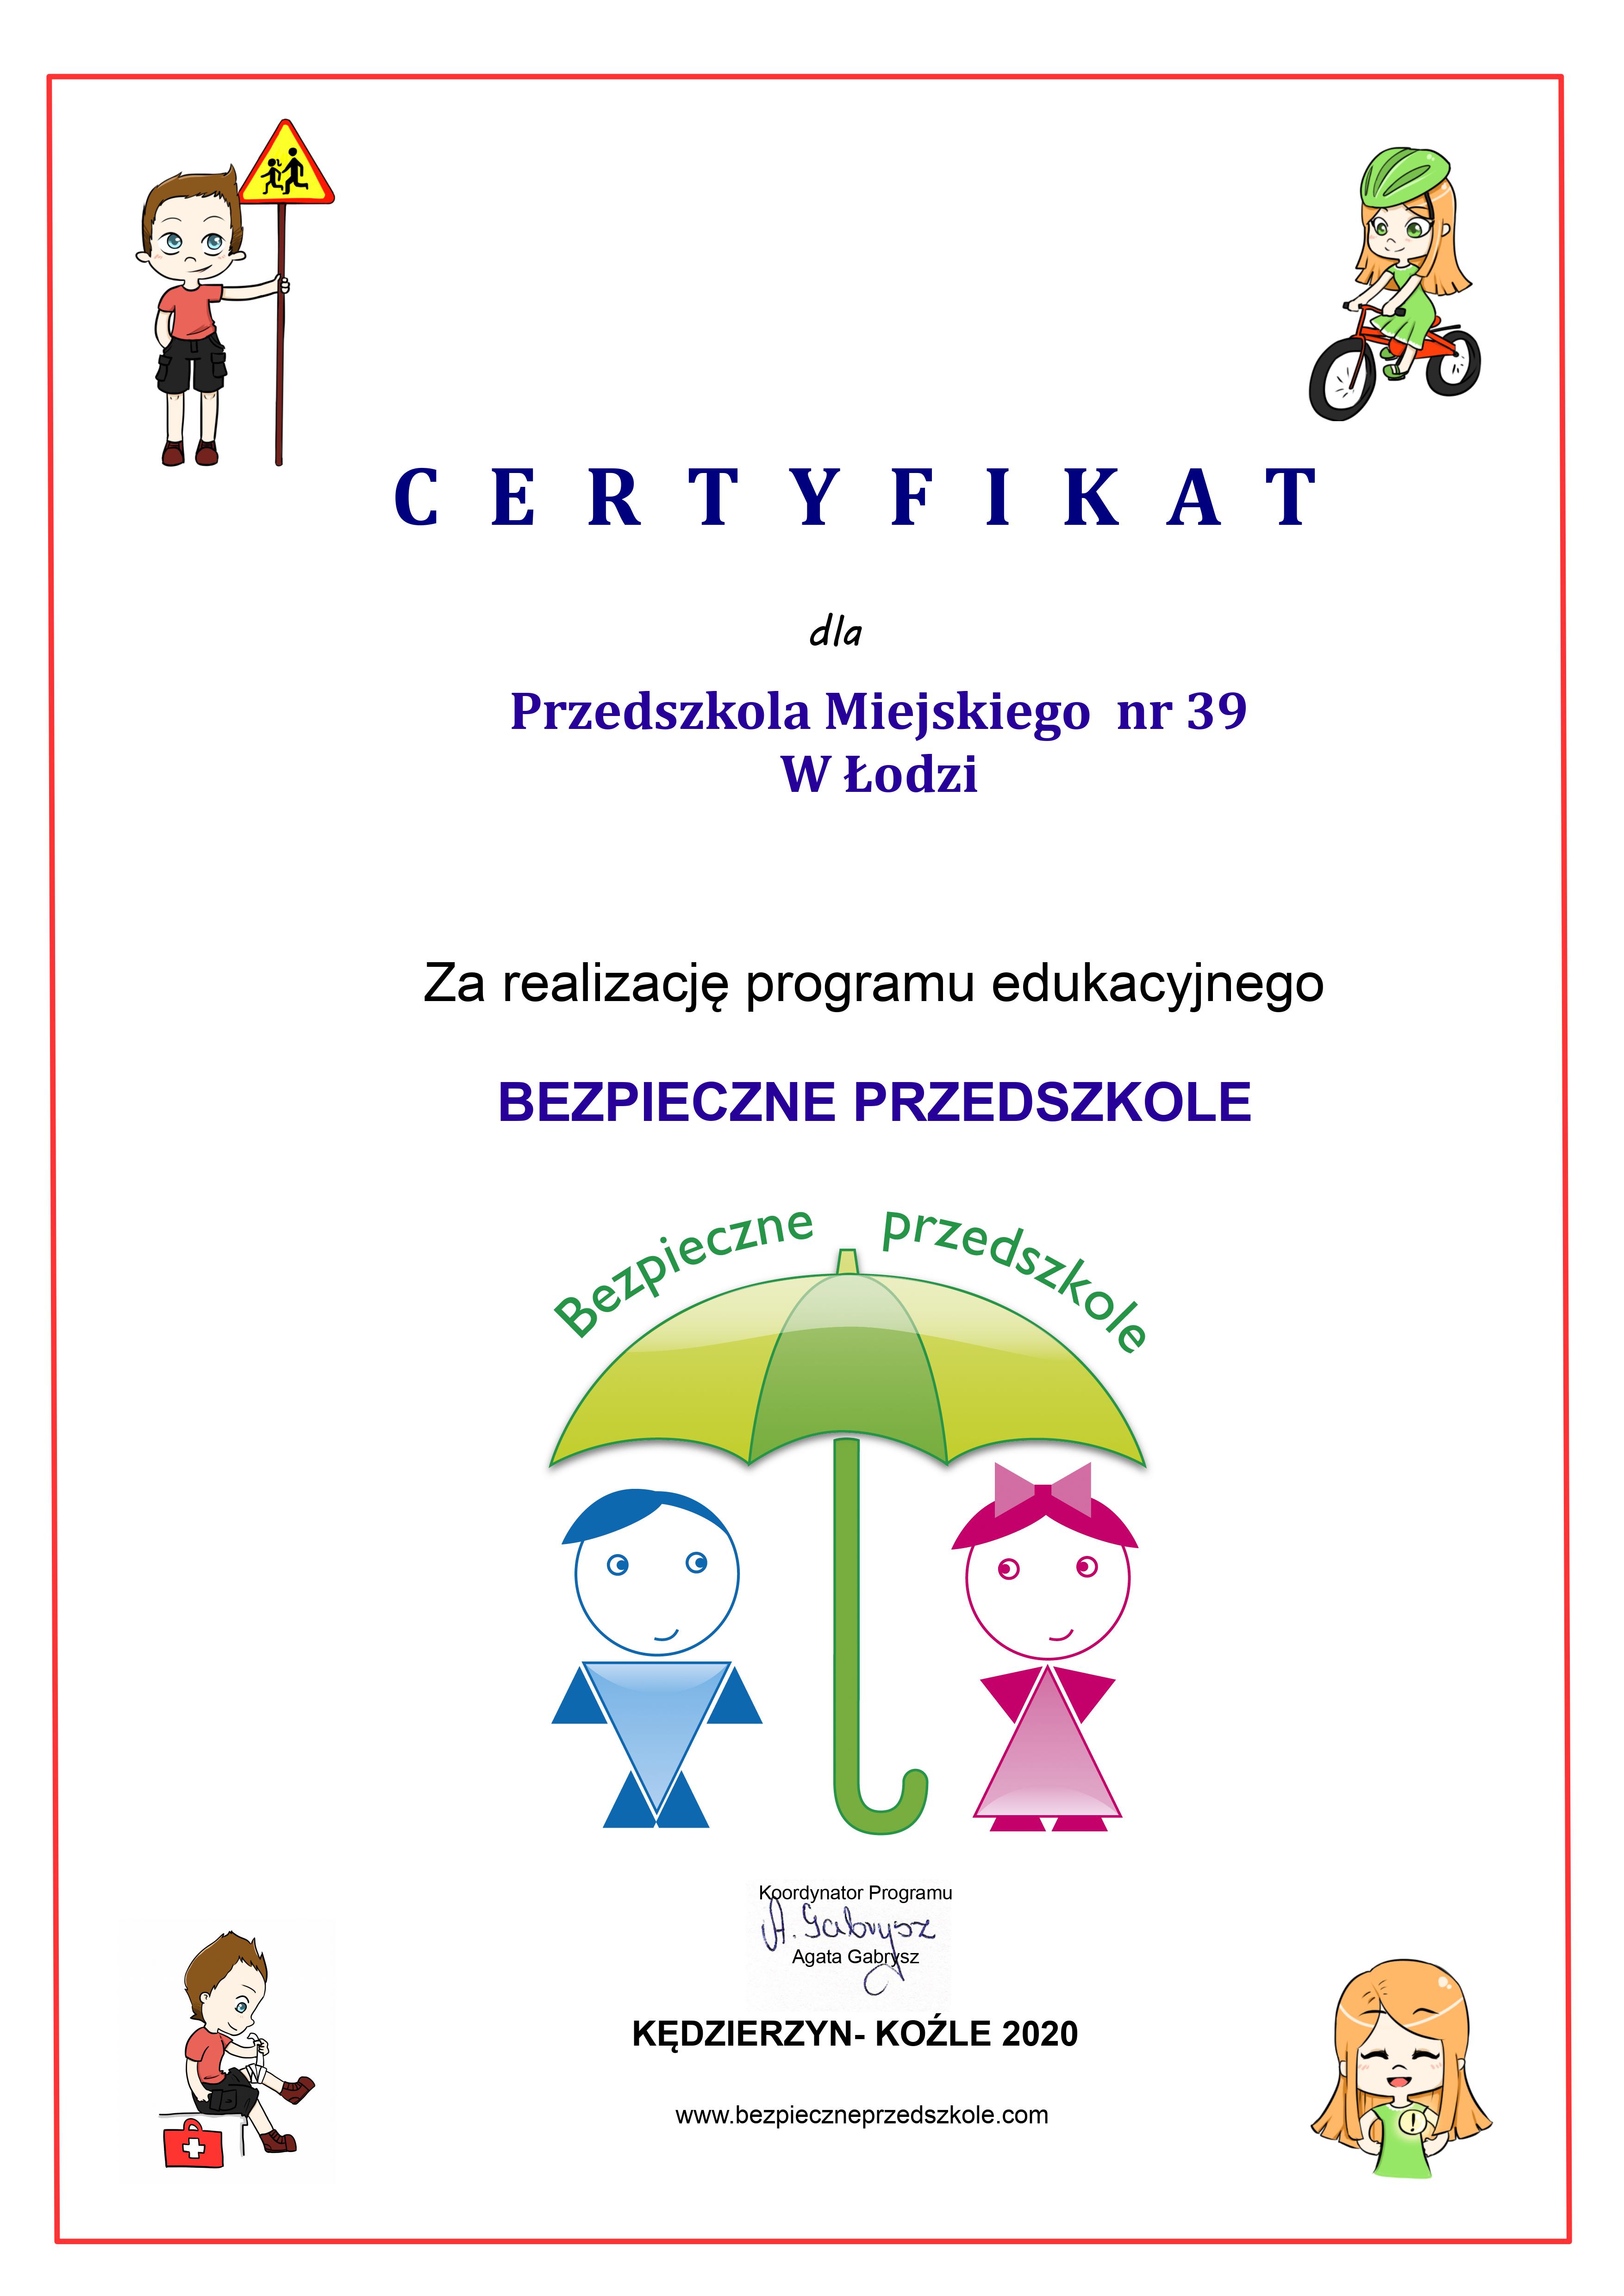 Certyfikat dla PM39 za realizację pragramu "Bezpieczne Przedszkole"